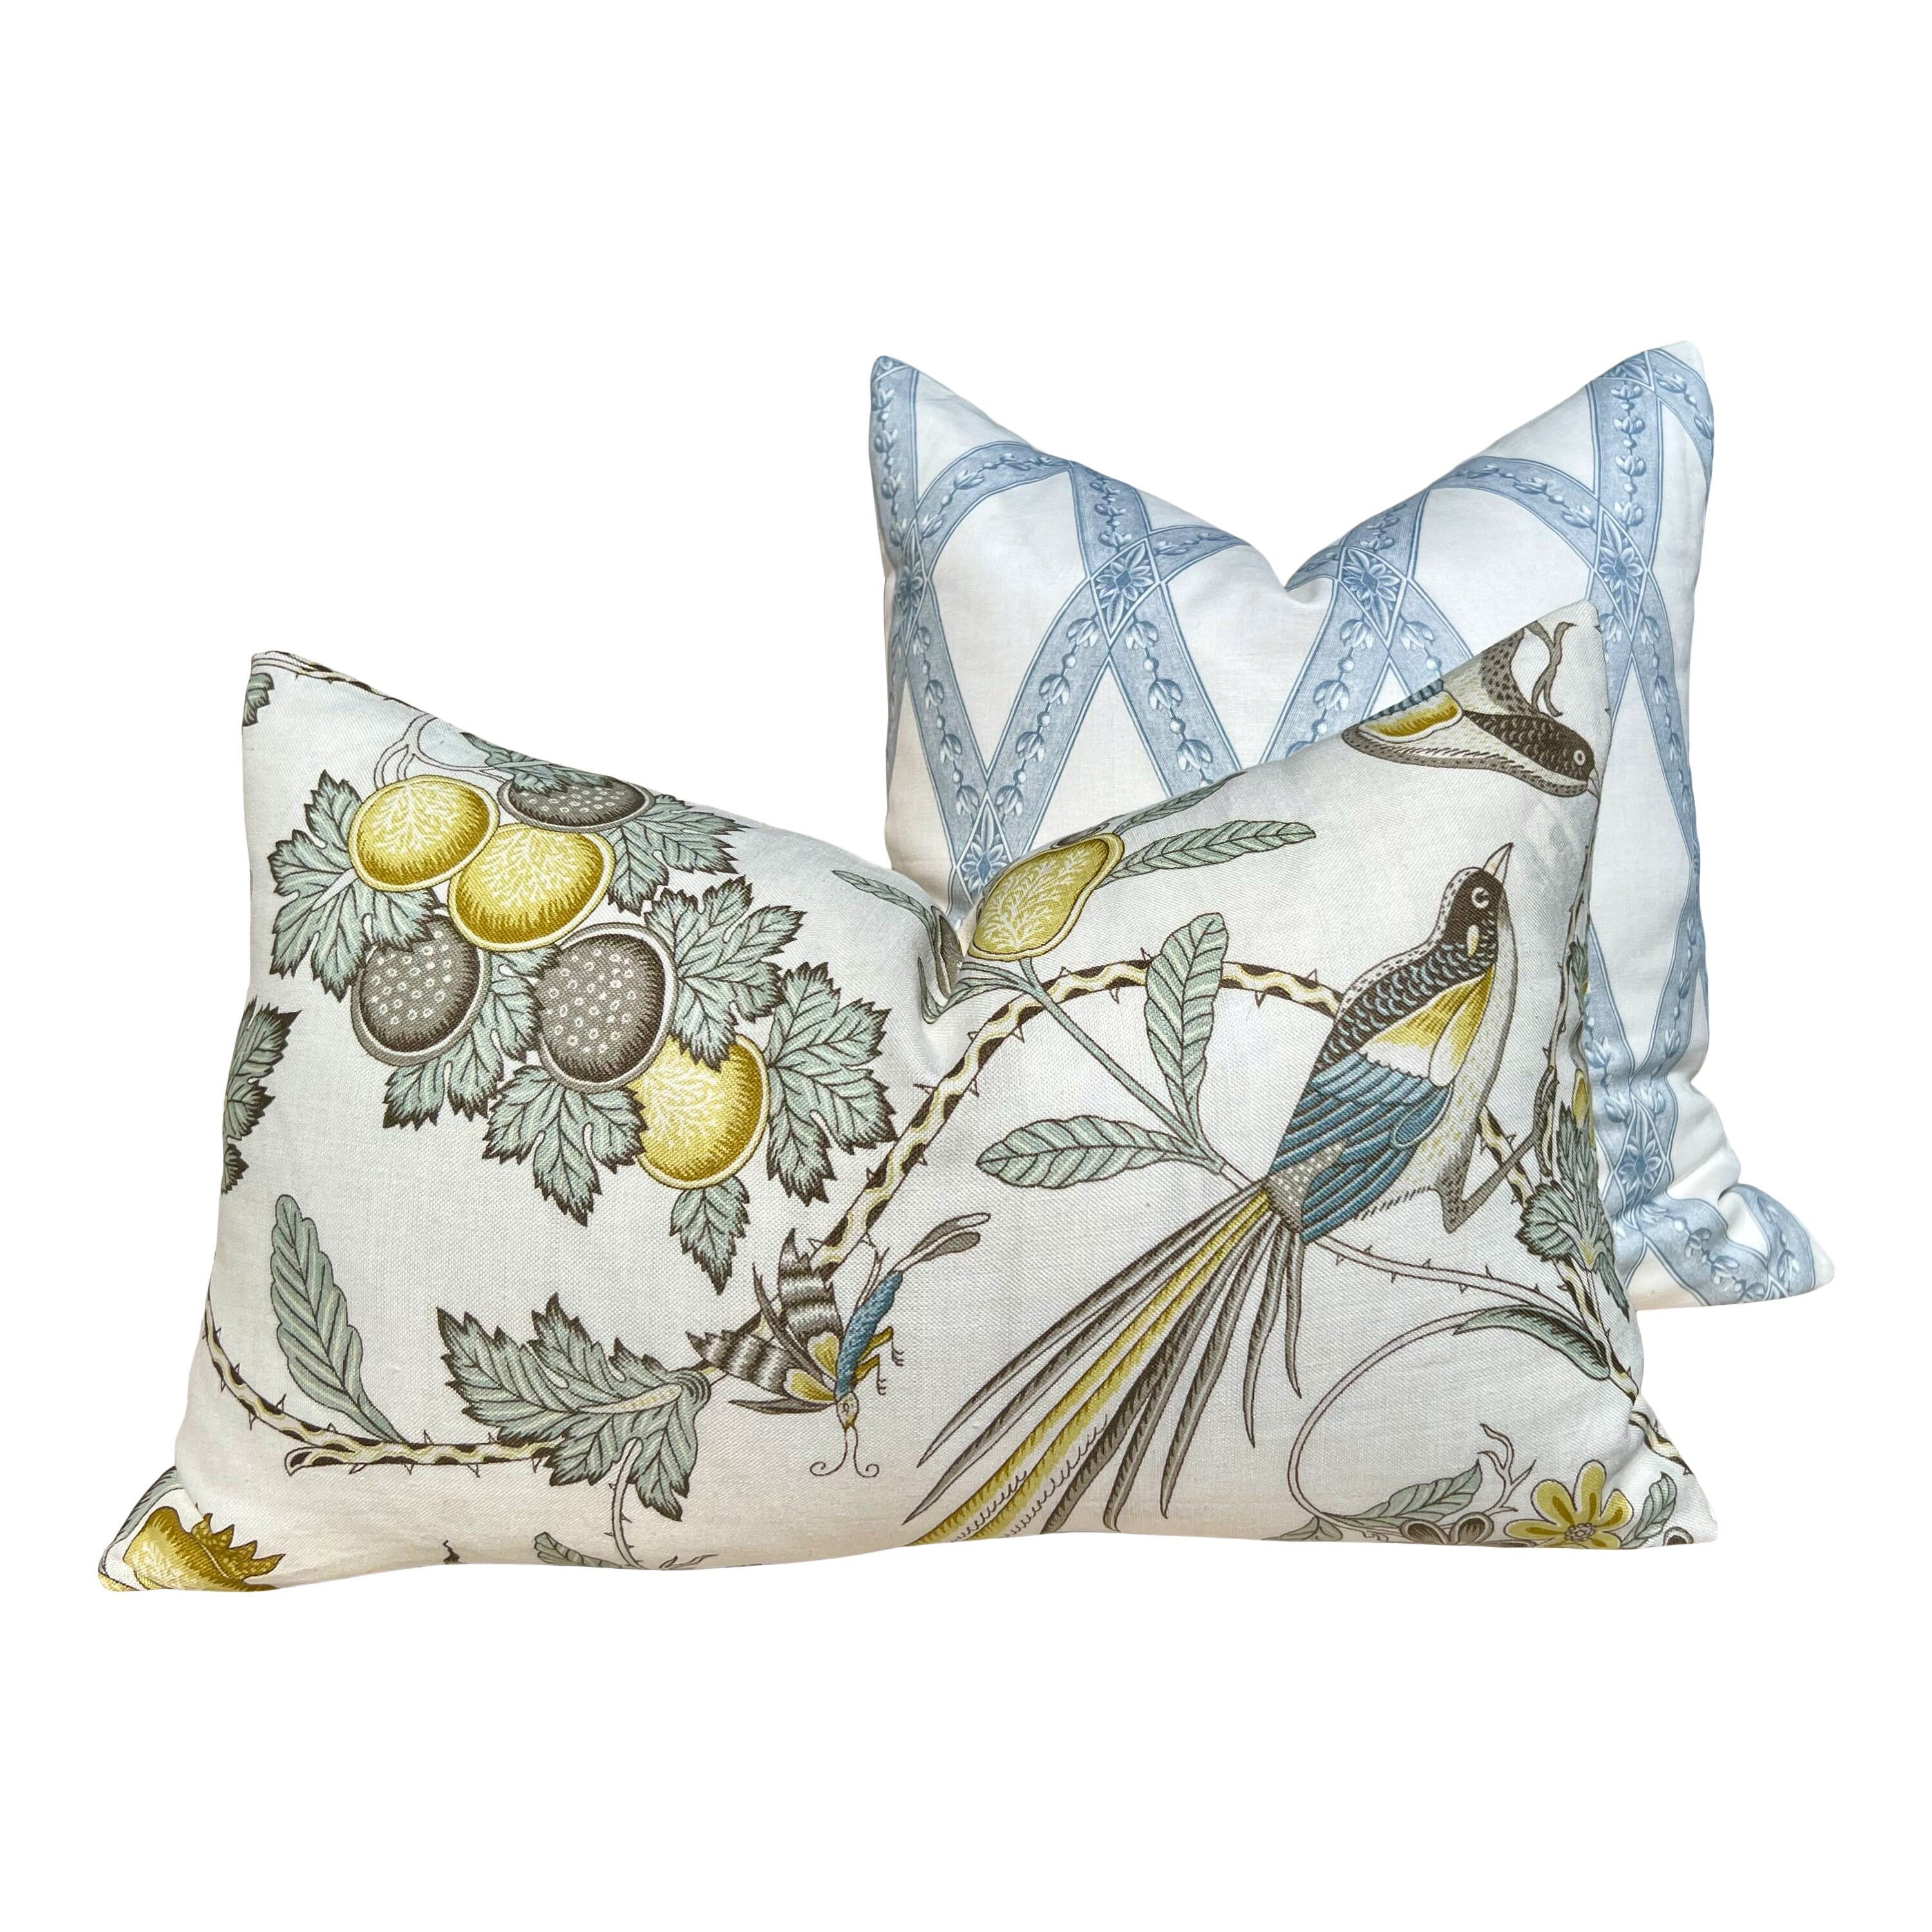 Schumacher Campagne Pillow in Spa Blue. Lumbar Linen Pillow, Designer Pillows, High End Pillows, Yellow Aqua Blue Pillow Case Bird Print